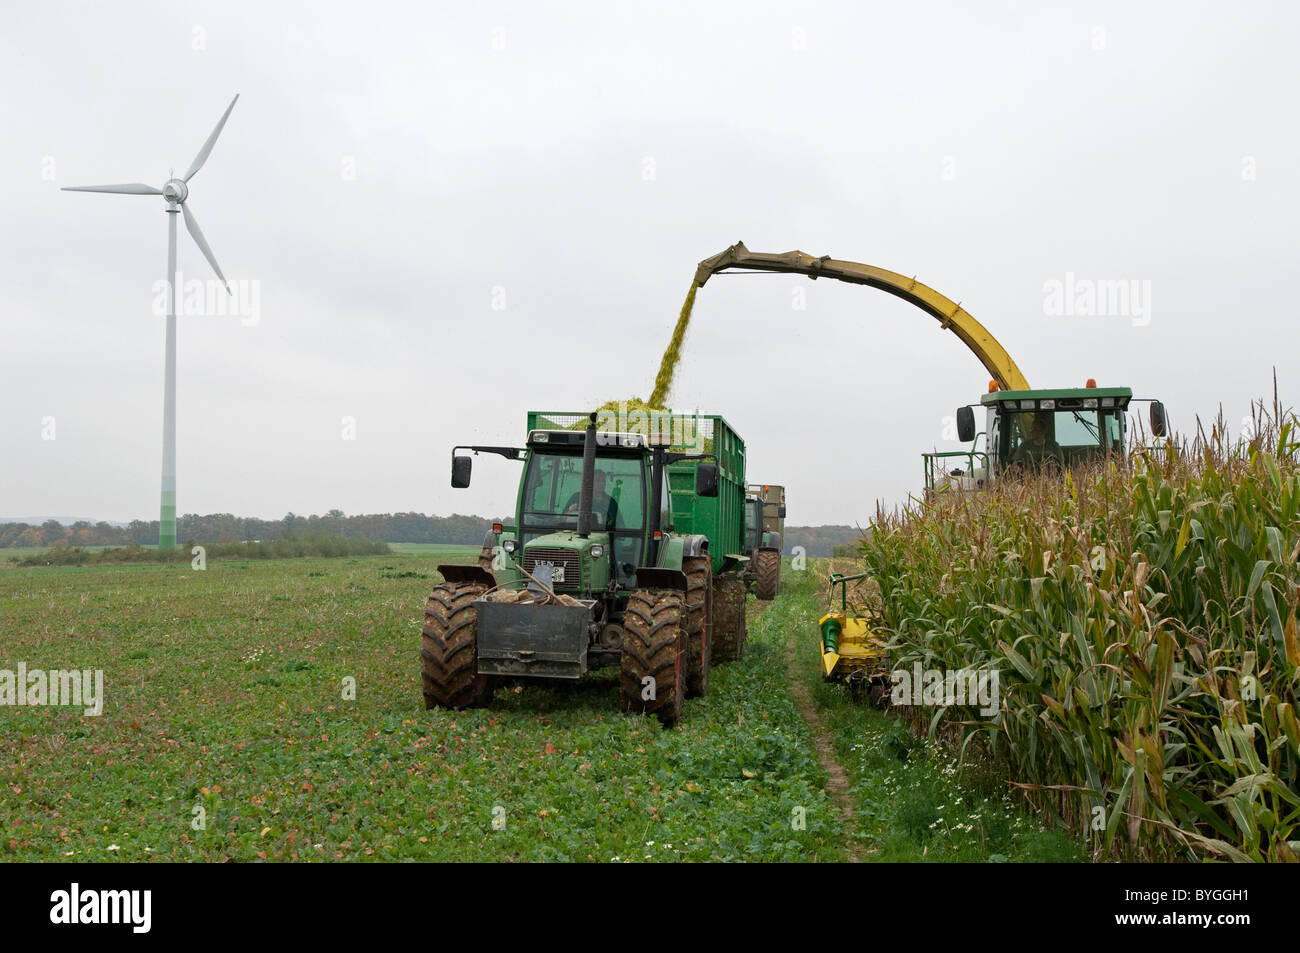 Le maïs, le maïs (Zea mays). La récolte de maïs. Un tracteur avec une remorque en marche à côté d'une récolteuse-hacheuse. Banque D'Images